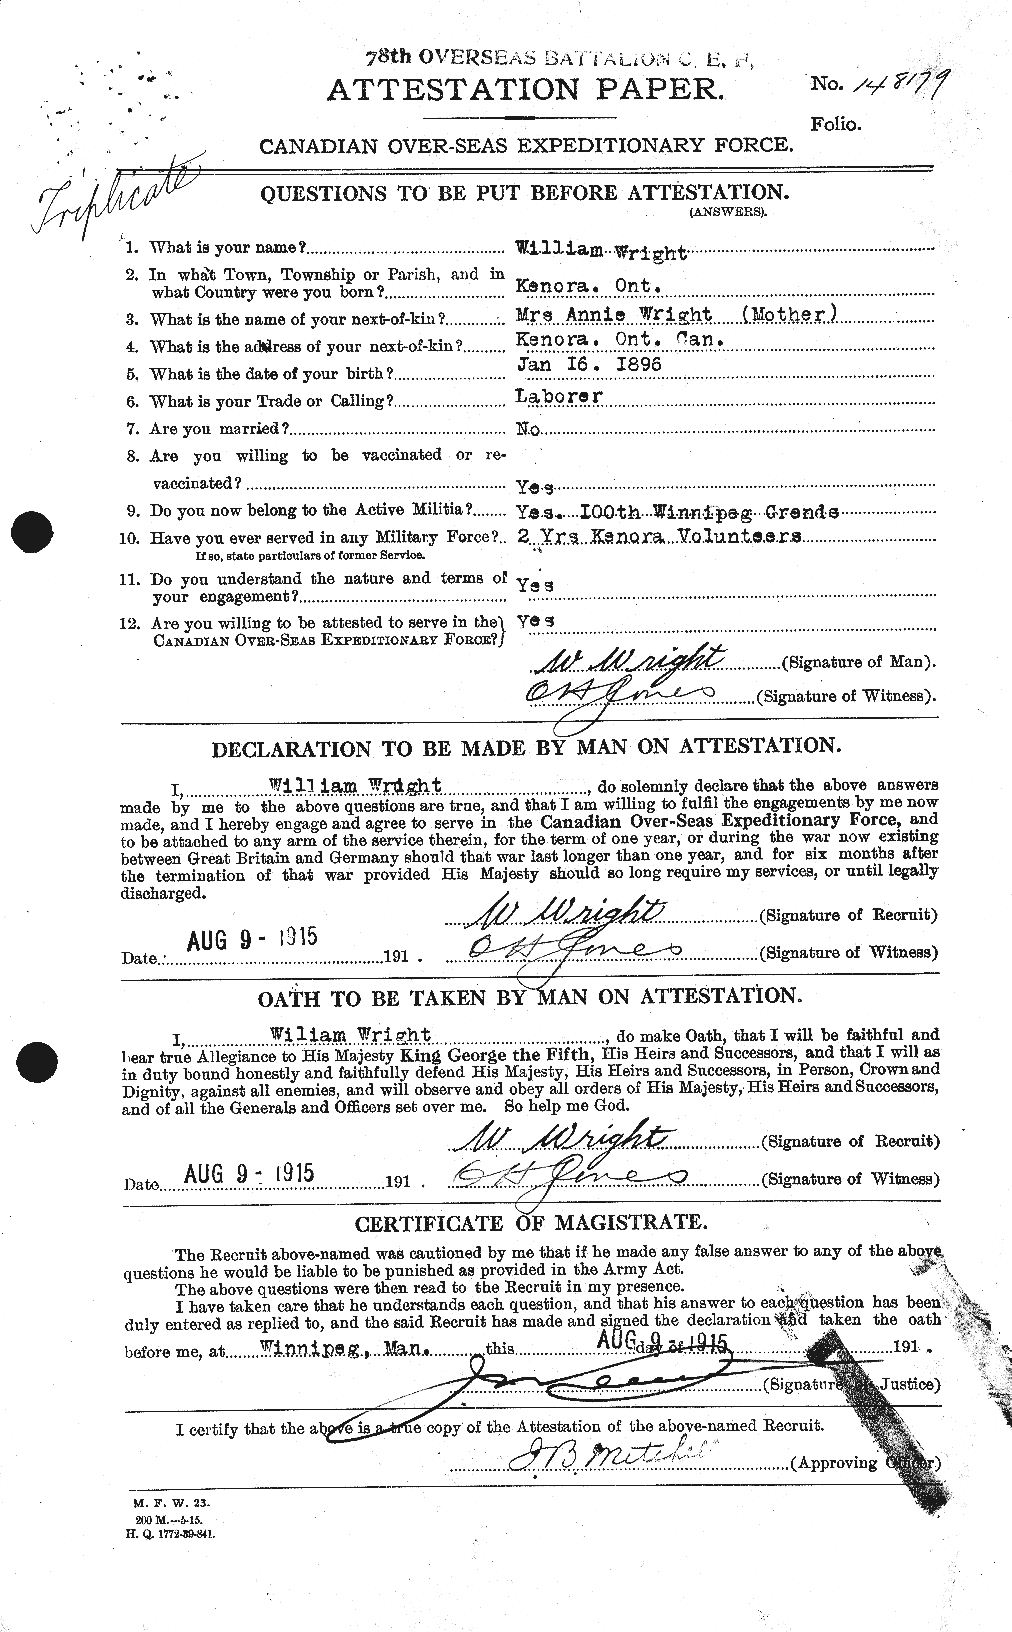 Dossiers du Personnel de la Première Guerre mondiale - CEC 688699a